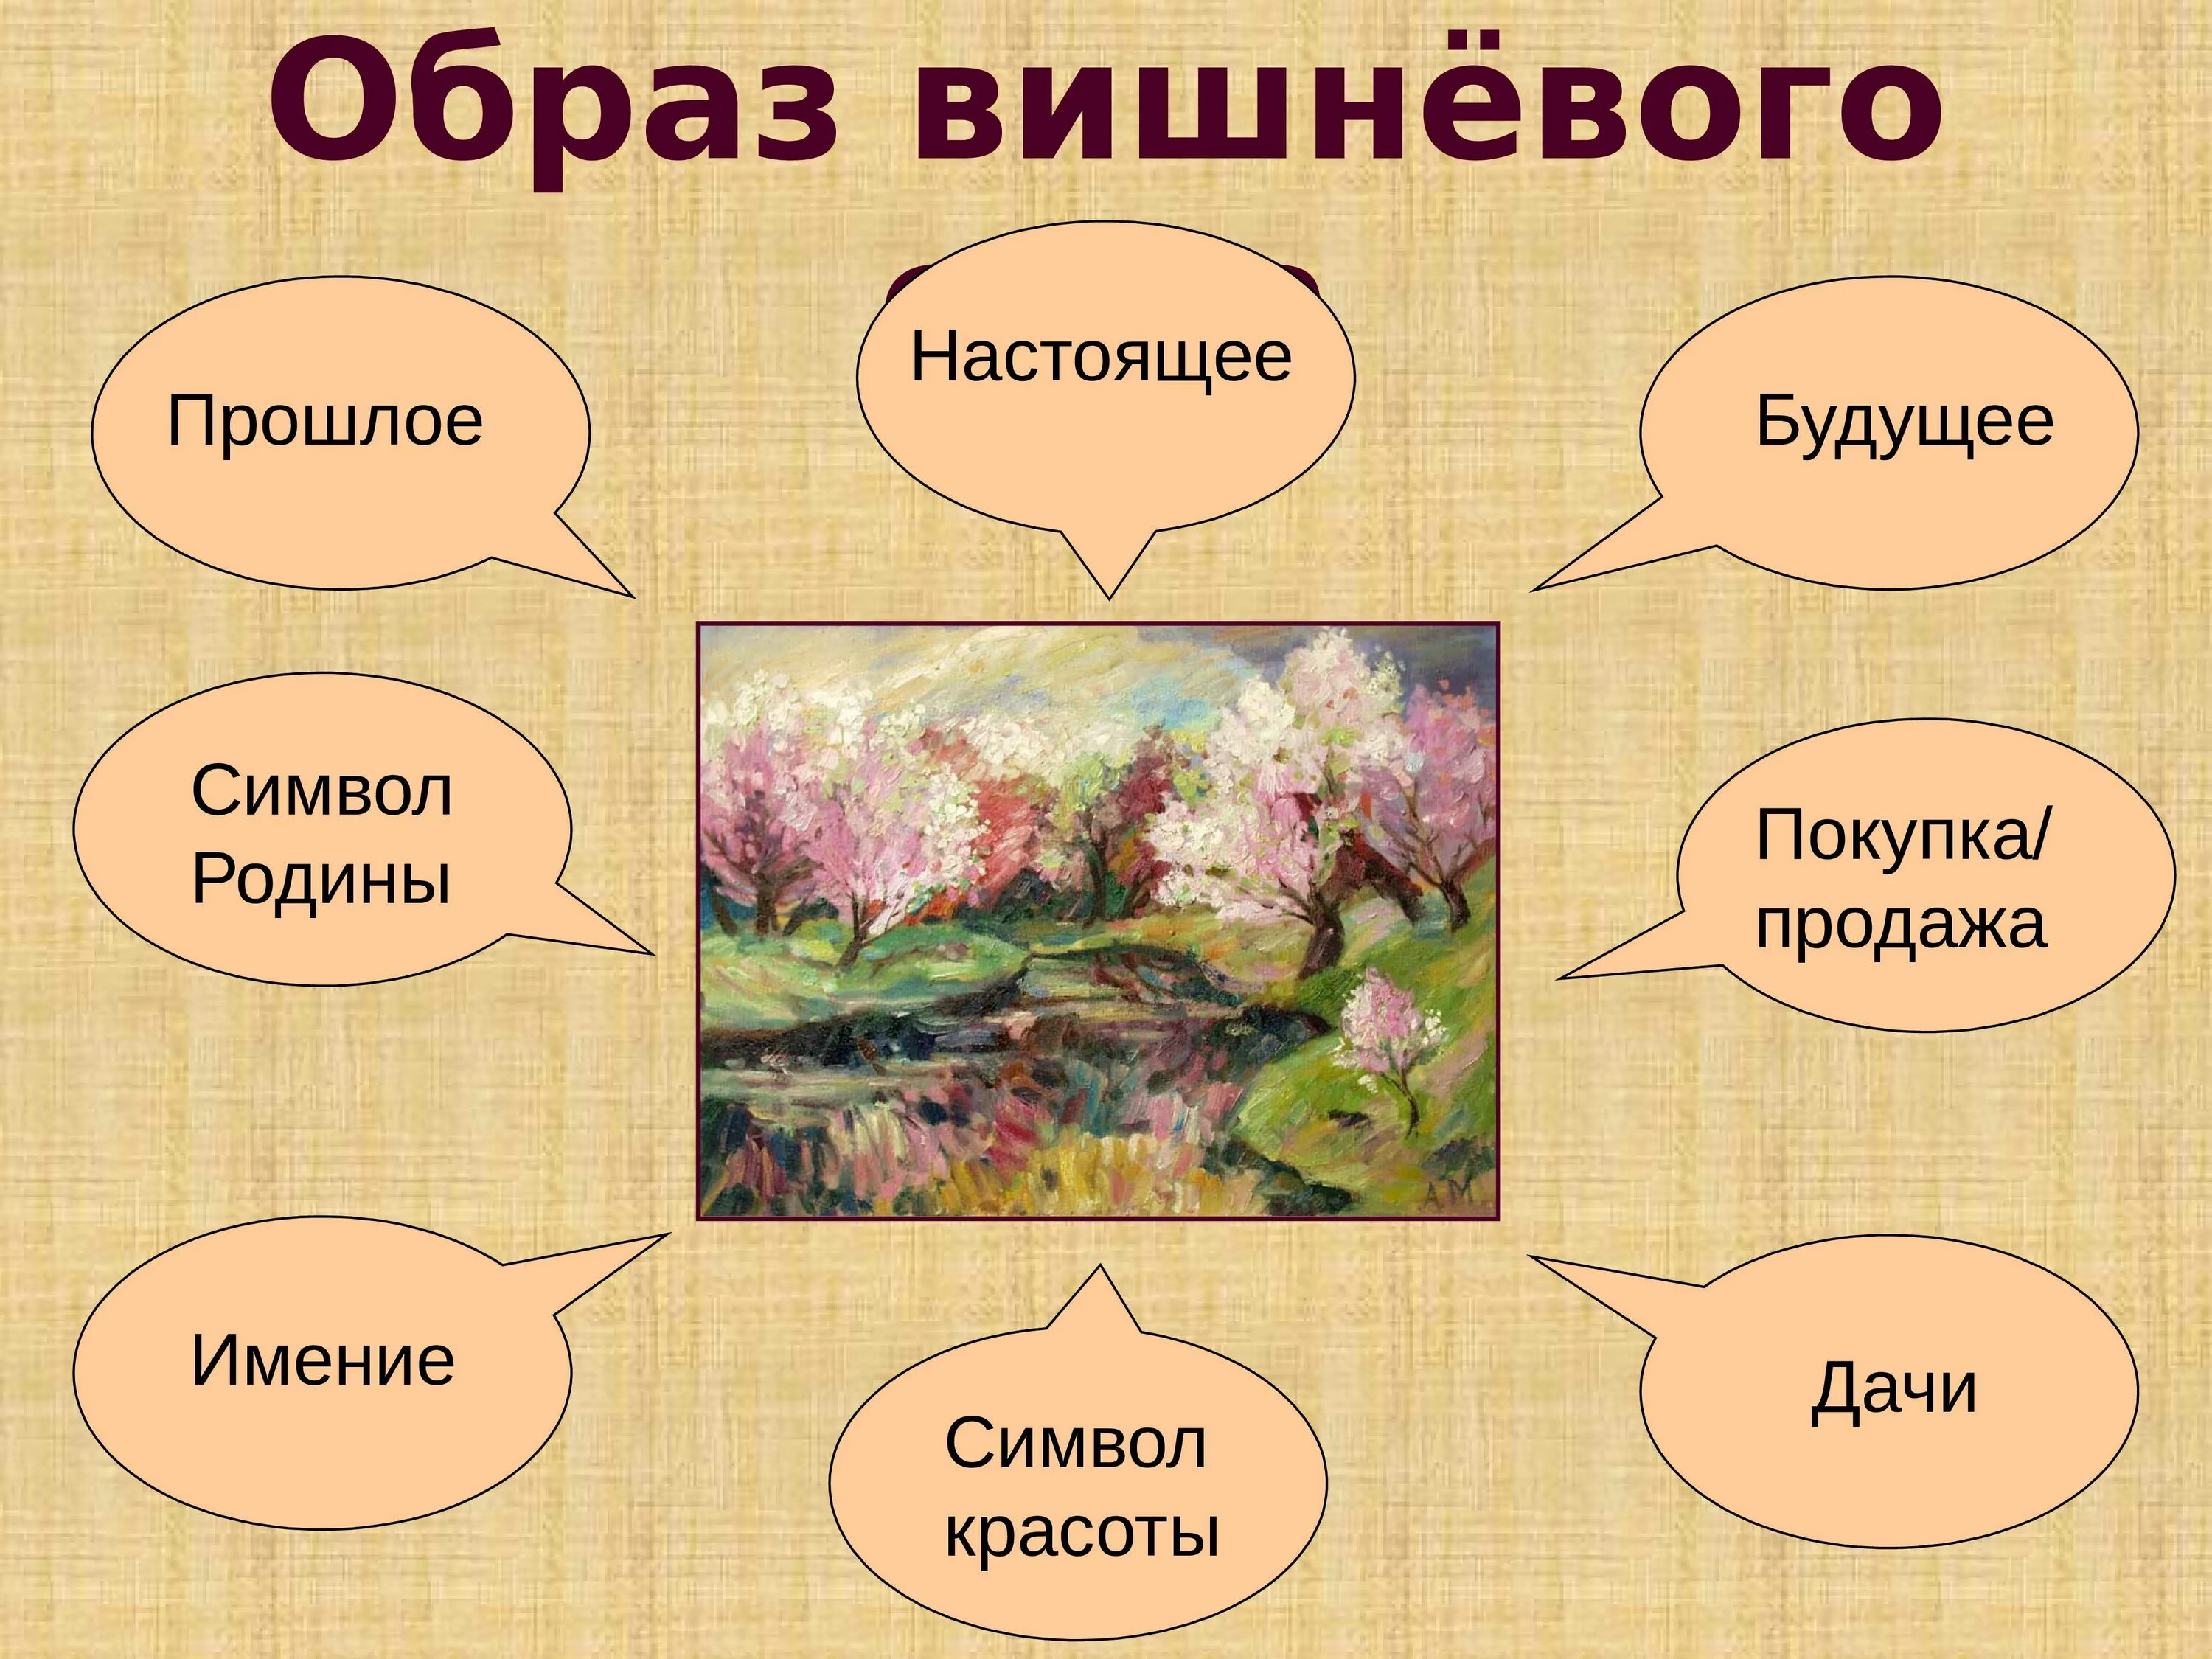 Вишневый СКД система образов. Образ вишневого сада. Вишневый сад презентация.